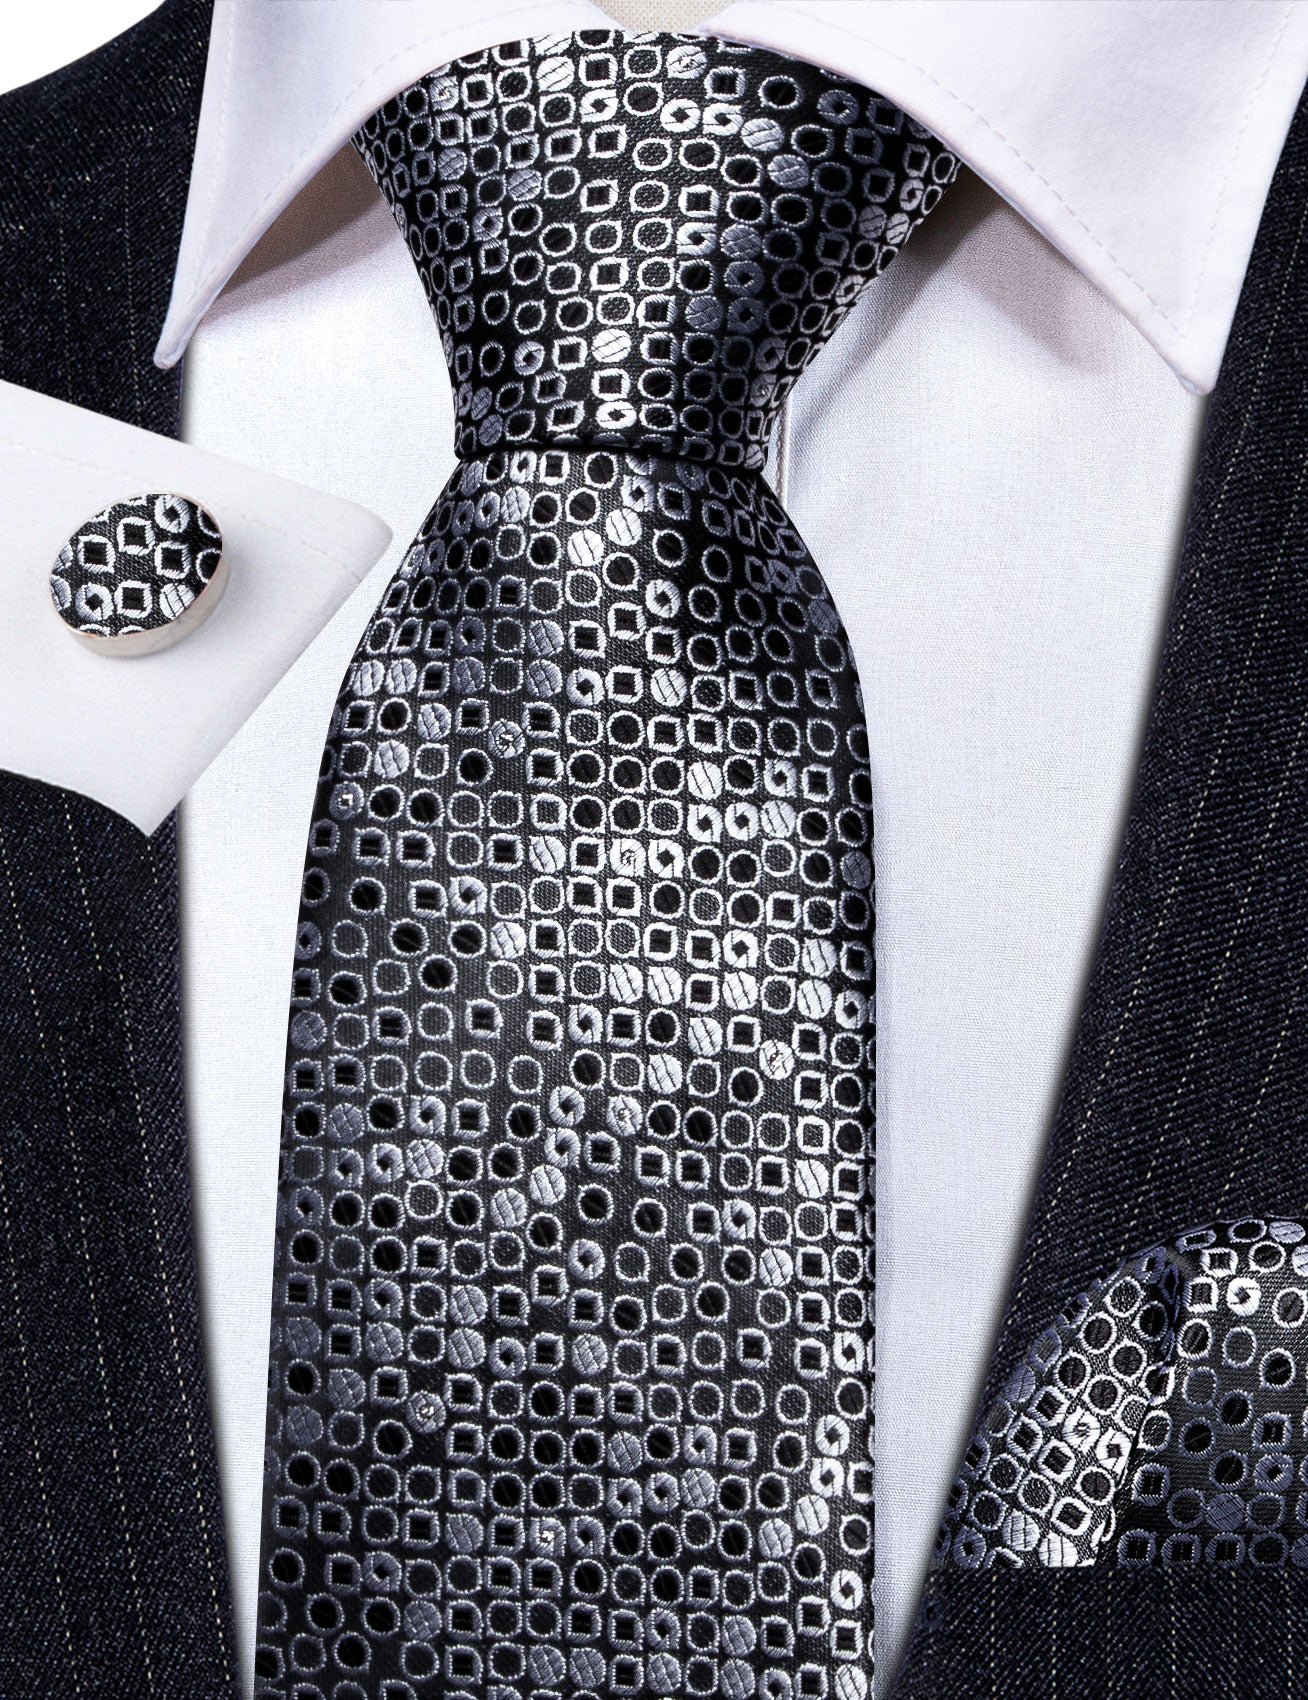 Black White Round Floral Silk Tie Handkerchief Cufflinks Set